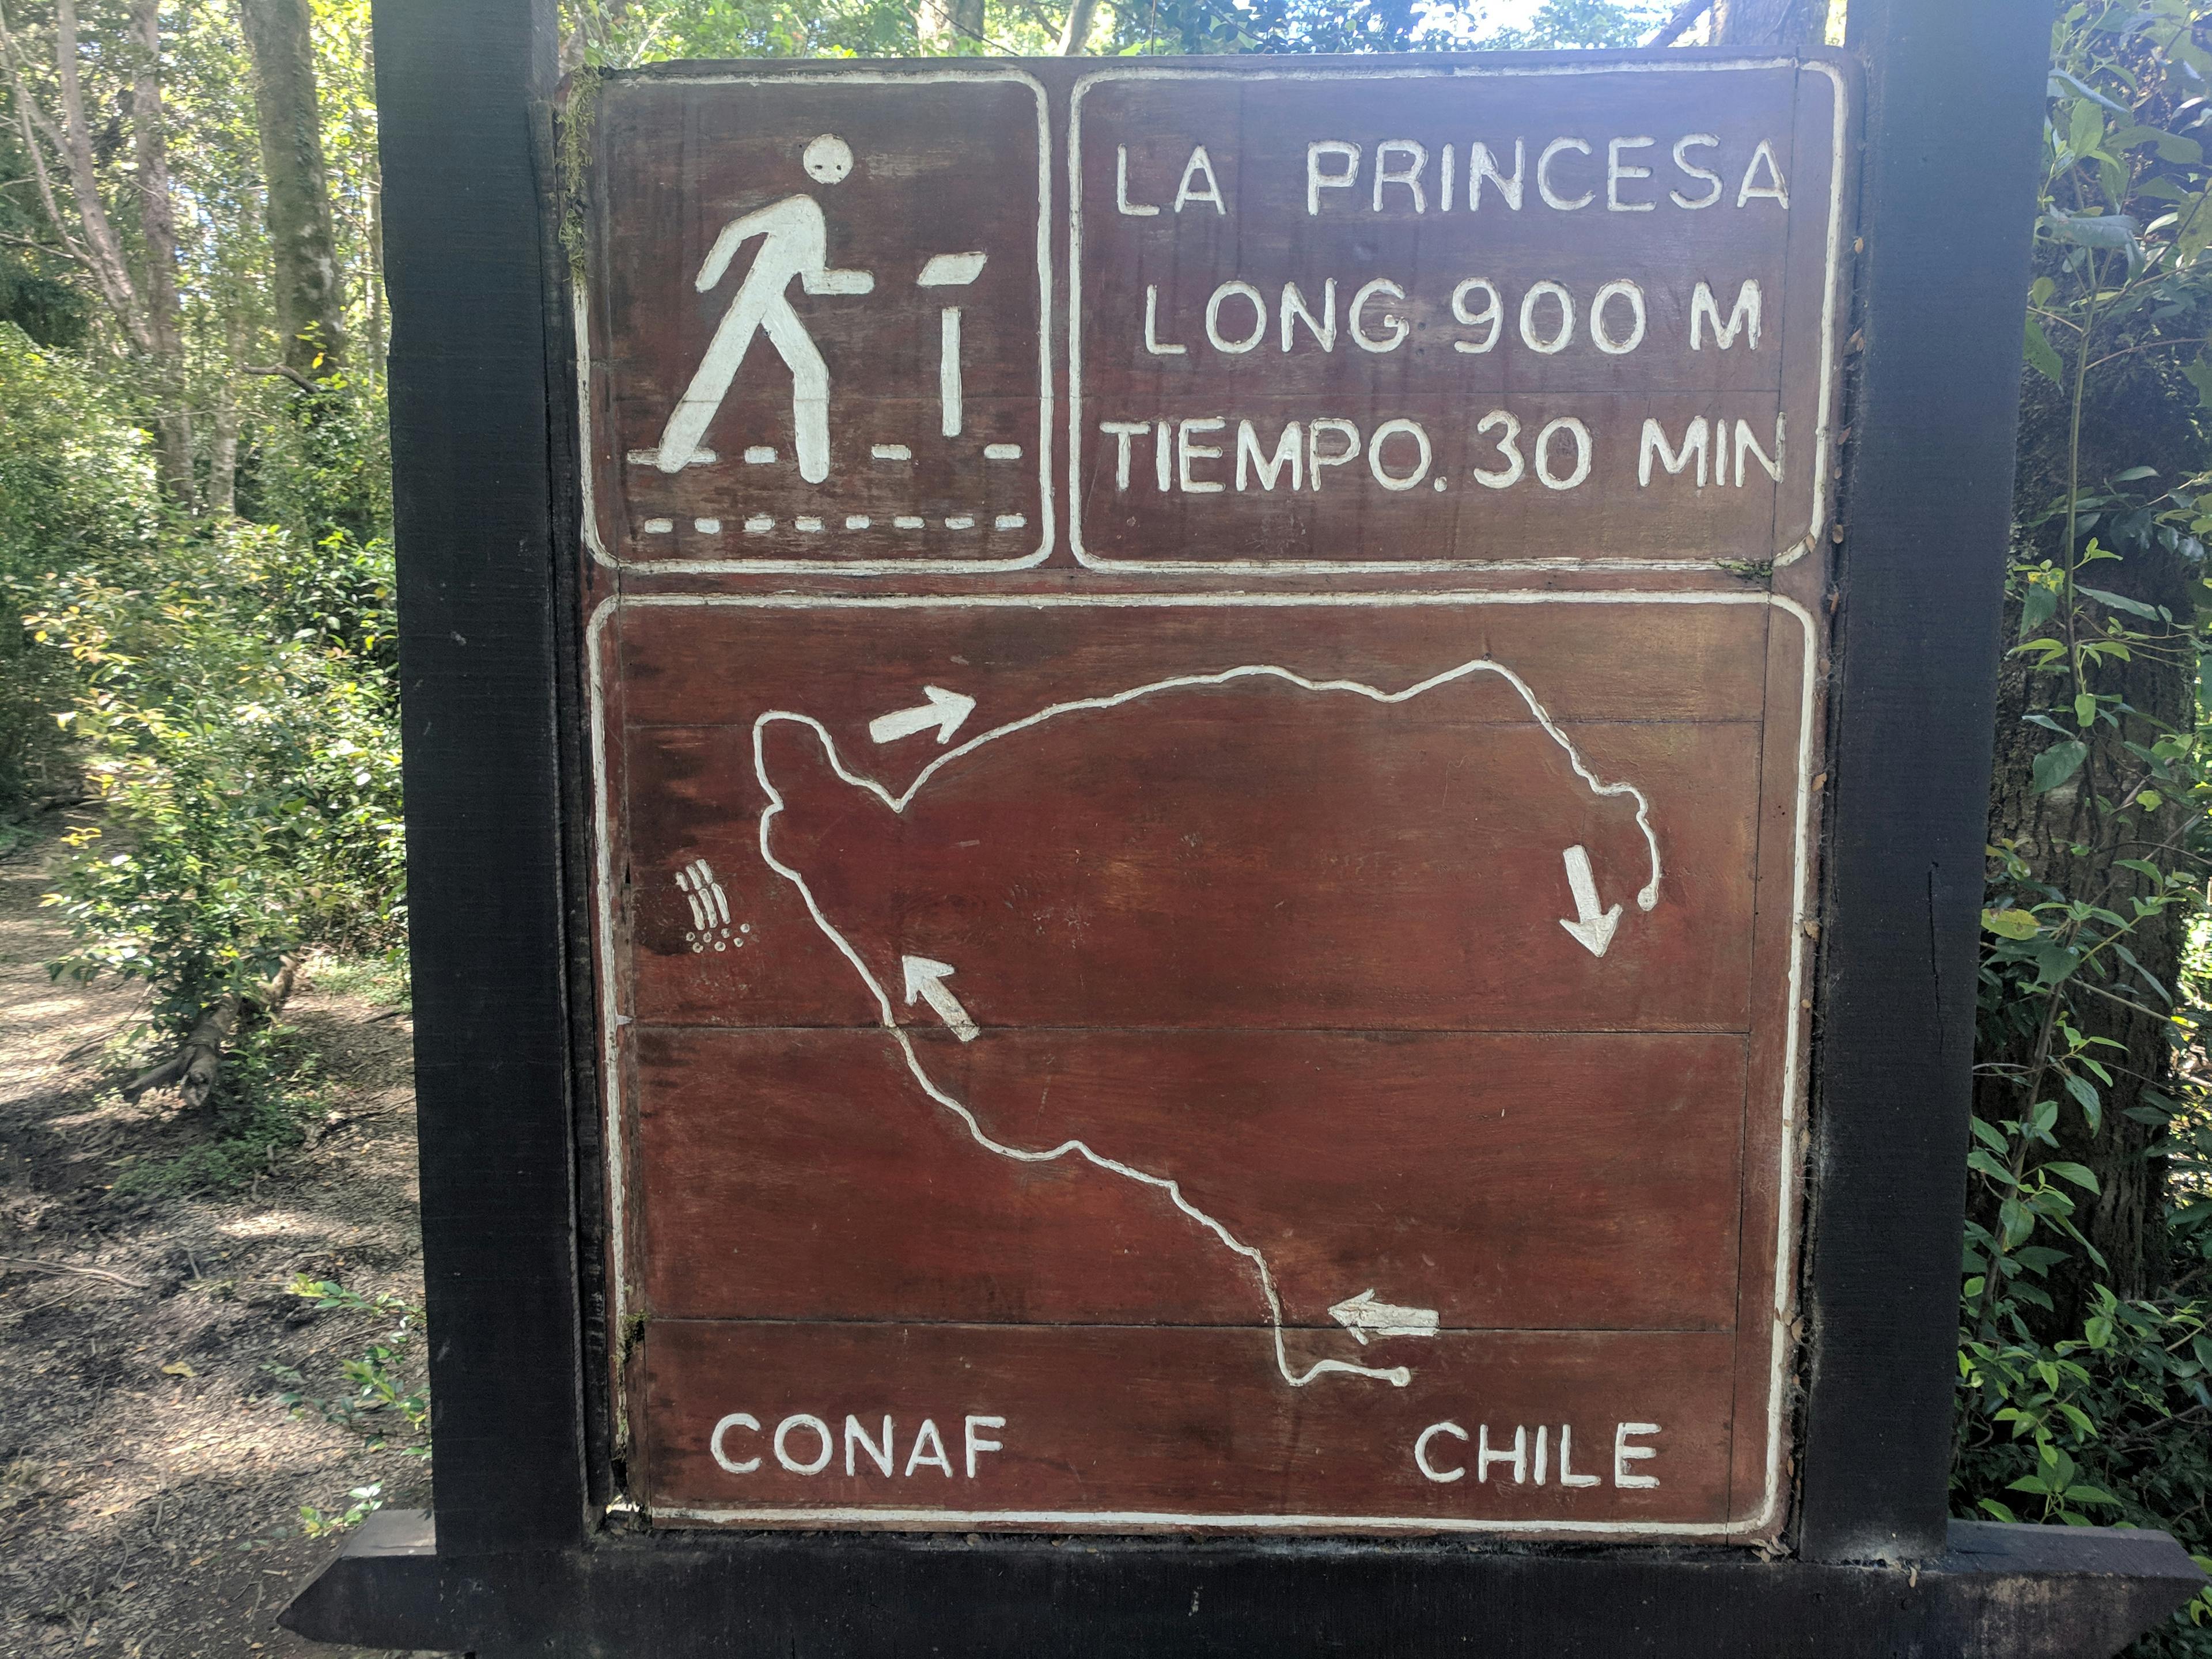 La princesa trail